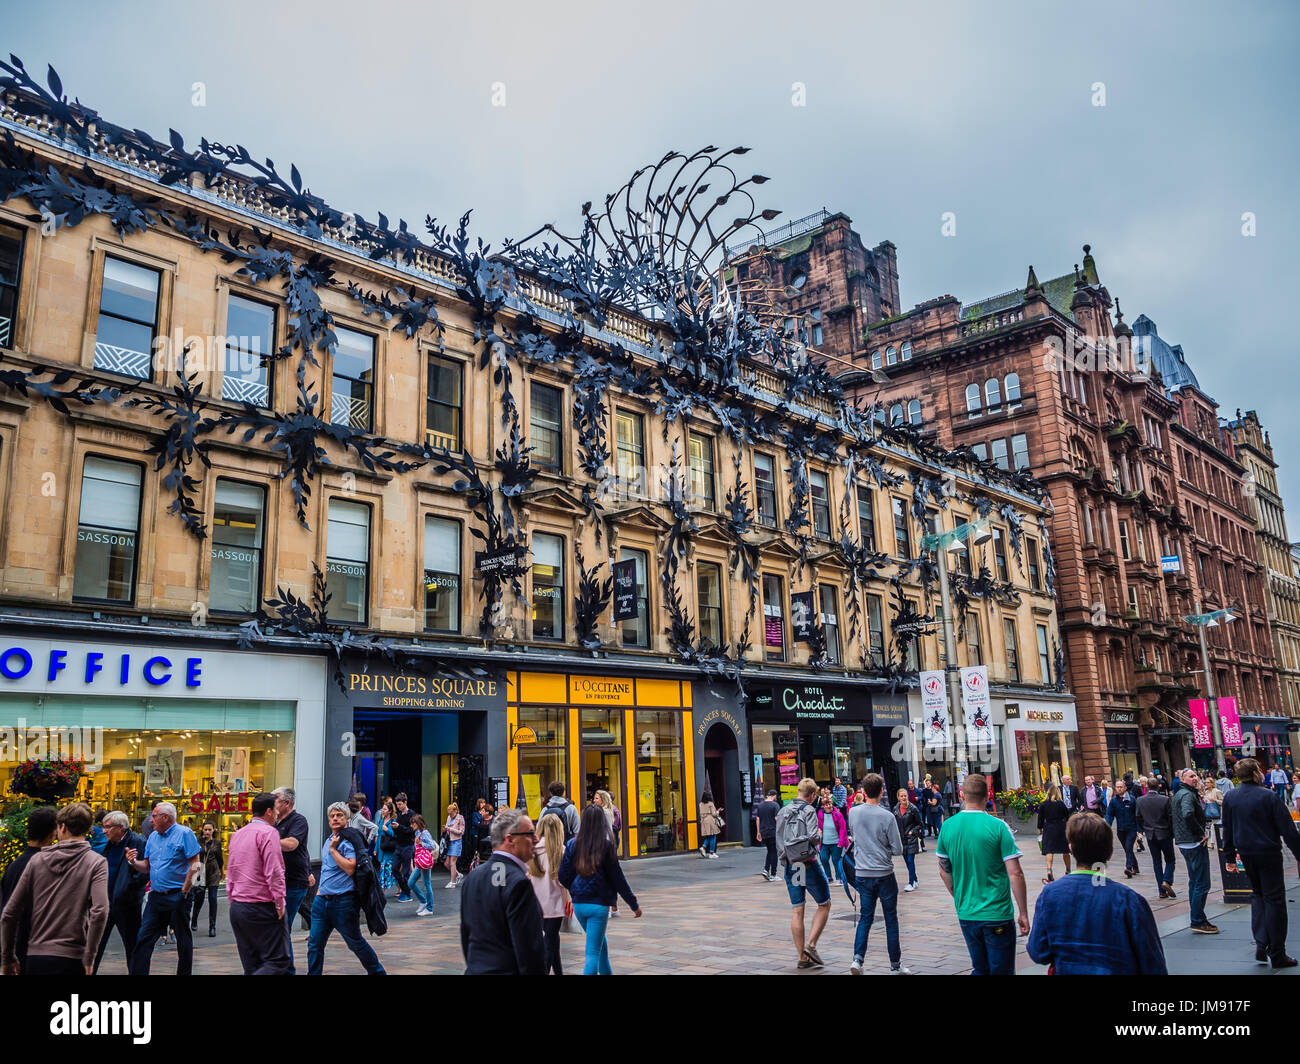 Princes Square, Glasgow Stock Photo